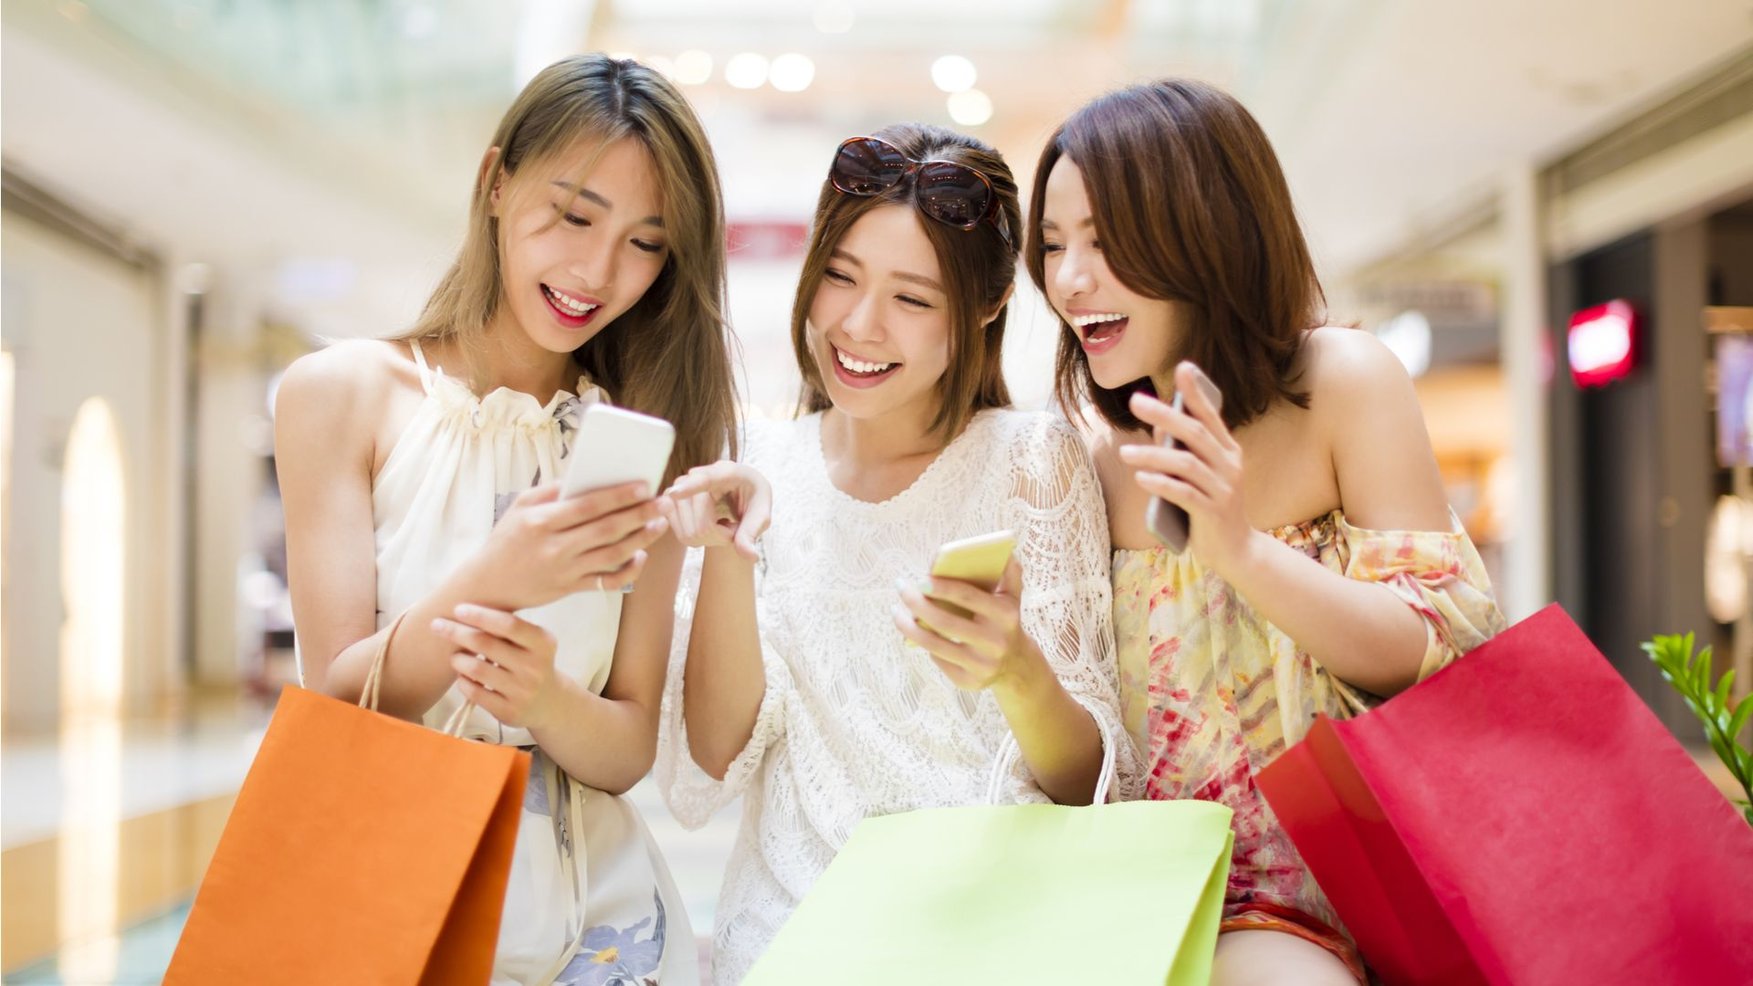 Shopping is fun. Китайцы на шоппинге. Люди с покупками. Тренды из Китая. Счастливая девушка с покупками.